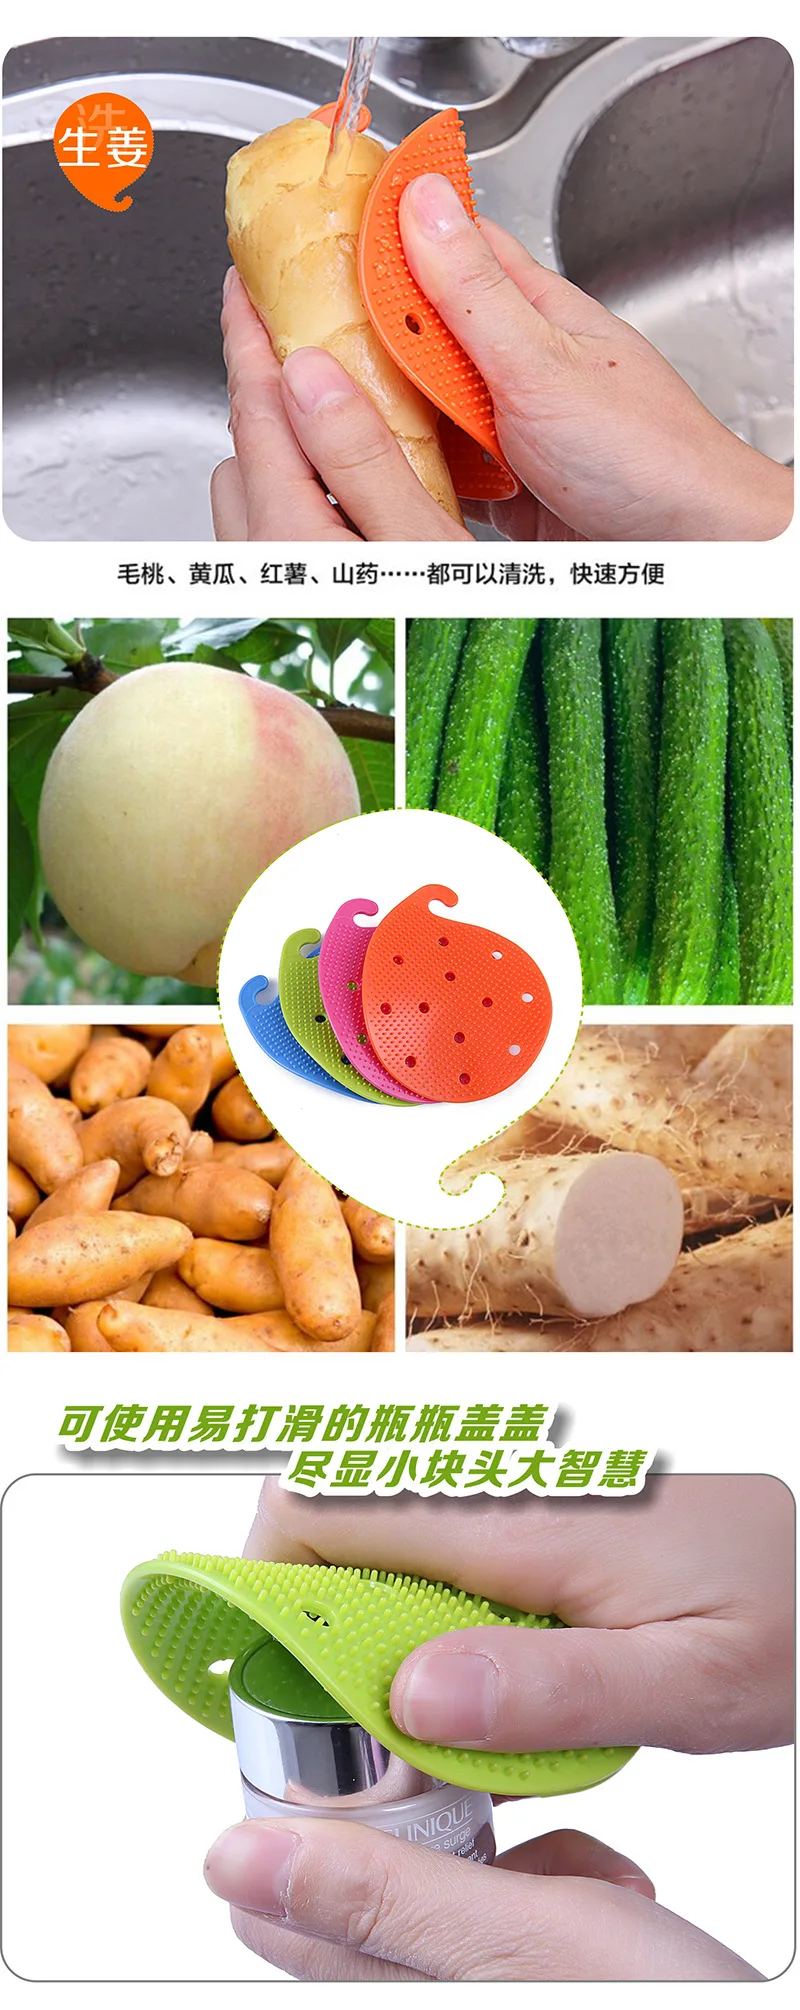 ETya многофункциональная фруктовая щетка для овощей, кухонные инструменты, чистящая щетка для картофеля, кухонные домашние гаджеты, инструменты для приготовления пищи